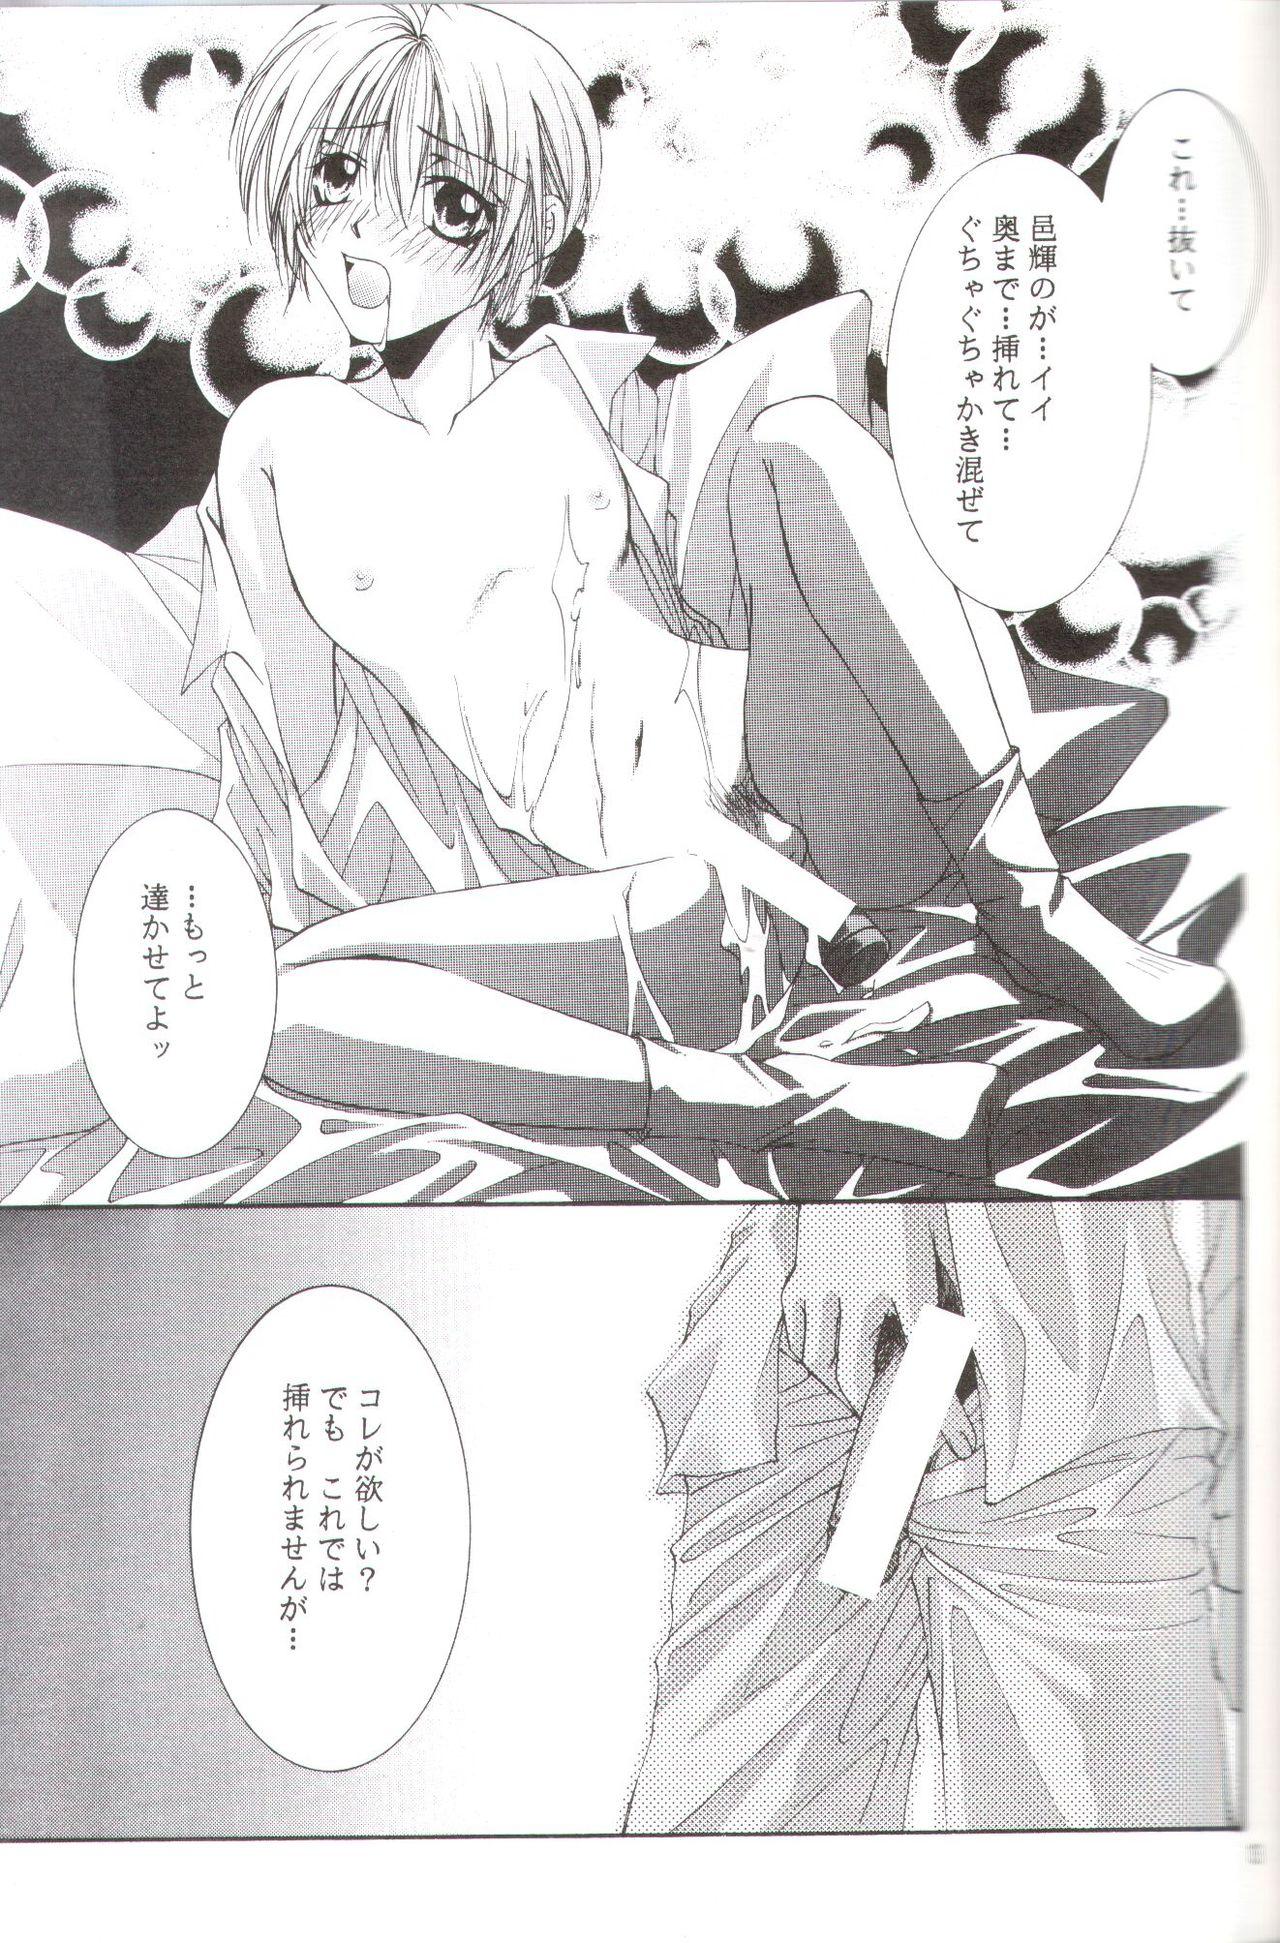 Cogiendo Kanaria wa Tsuki to Utau II - Yami no matsuei | descendants of darkness Lover - Page 10